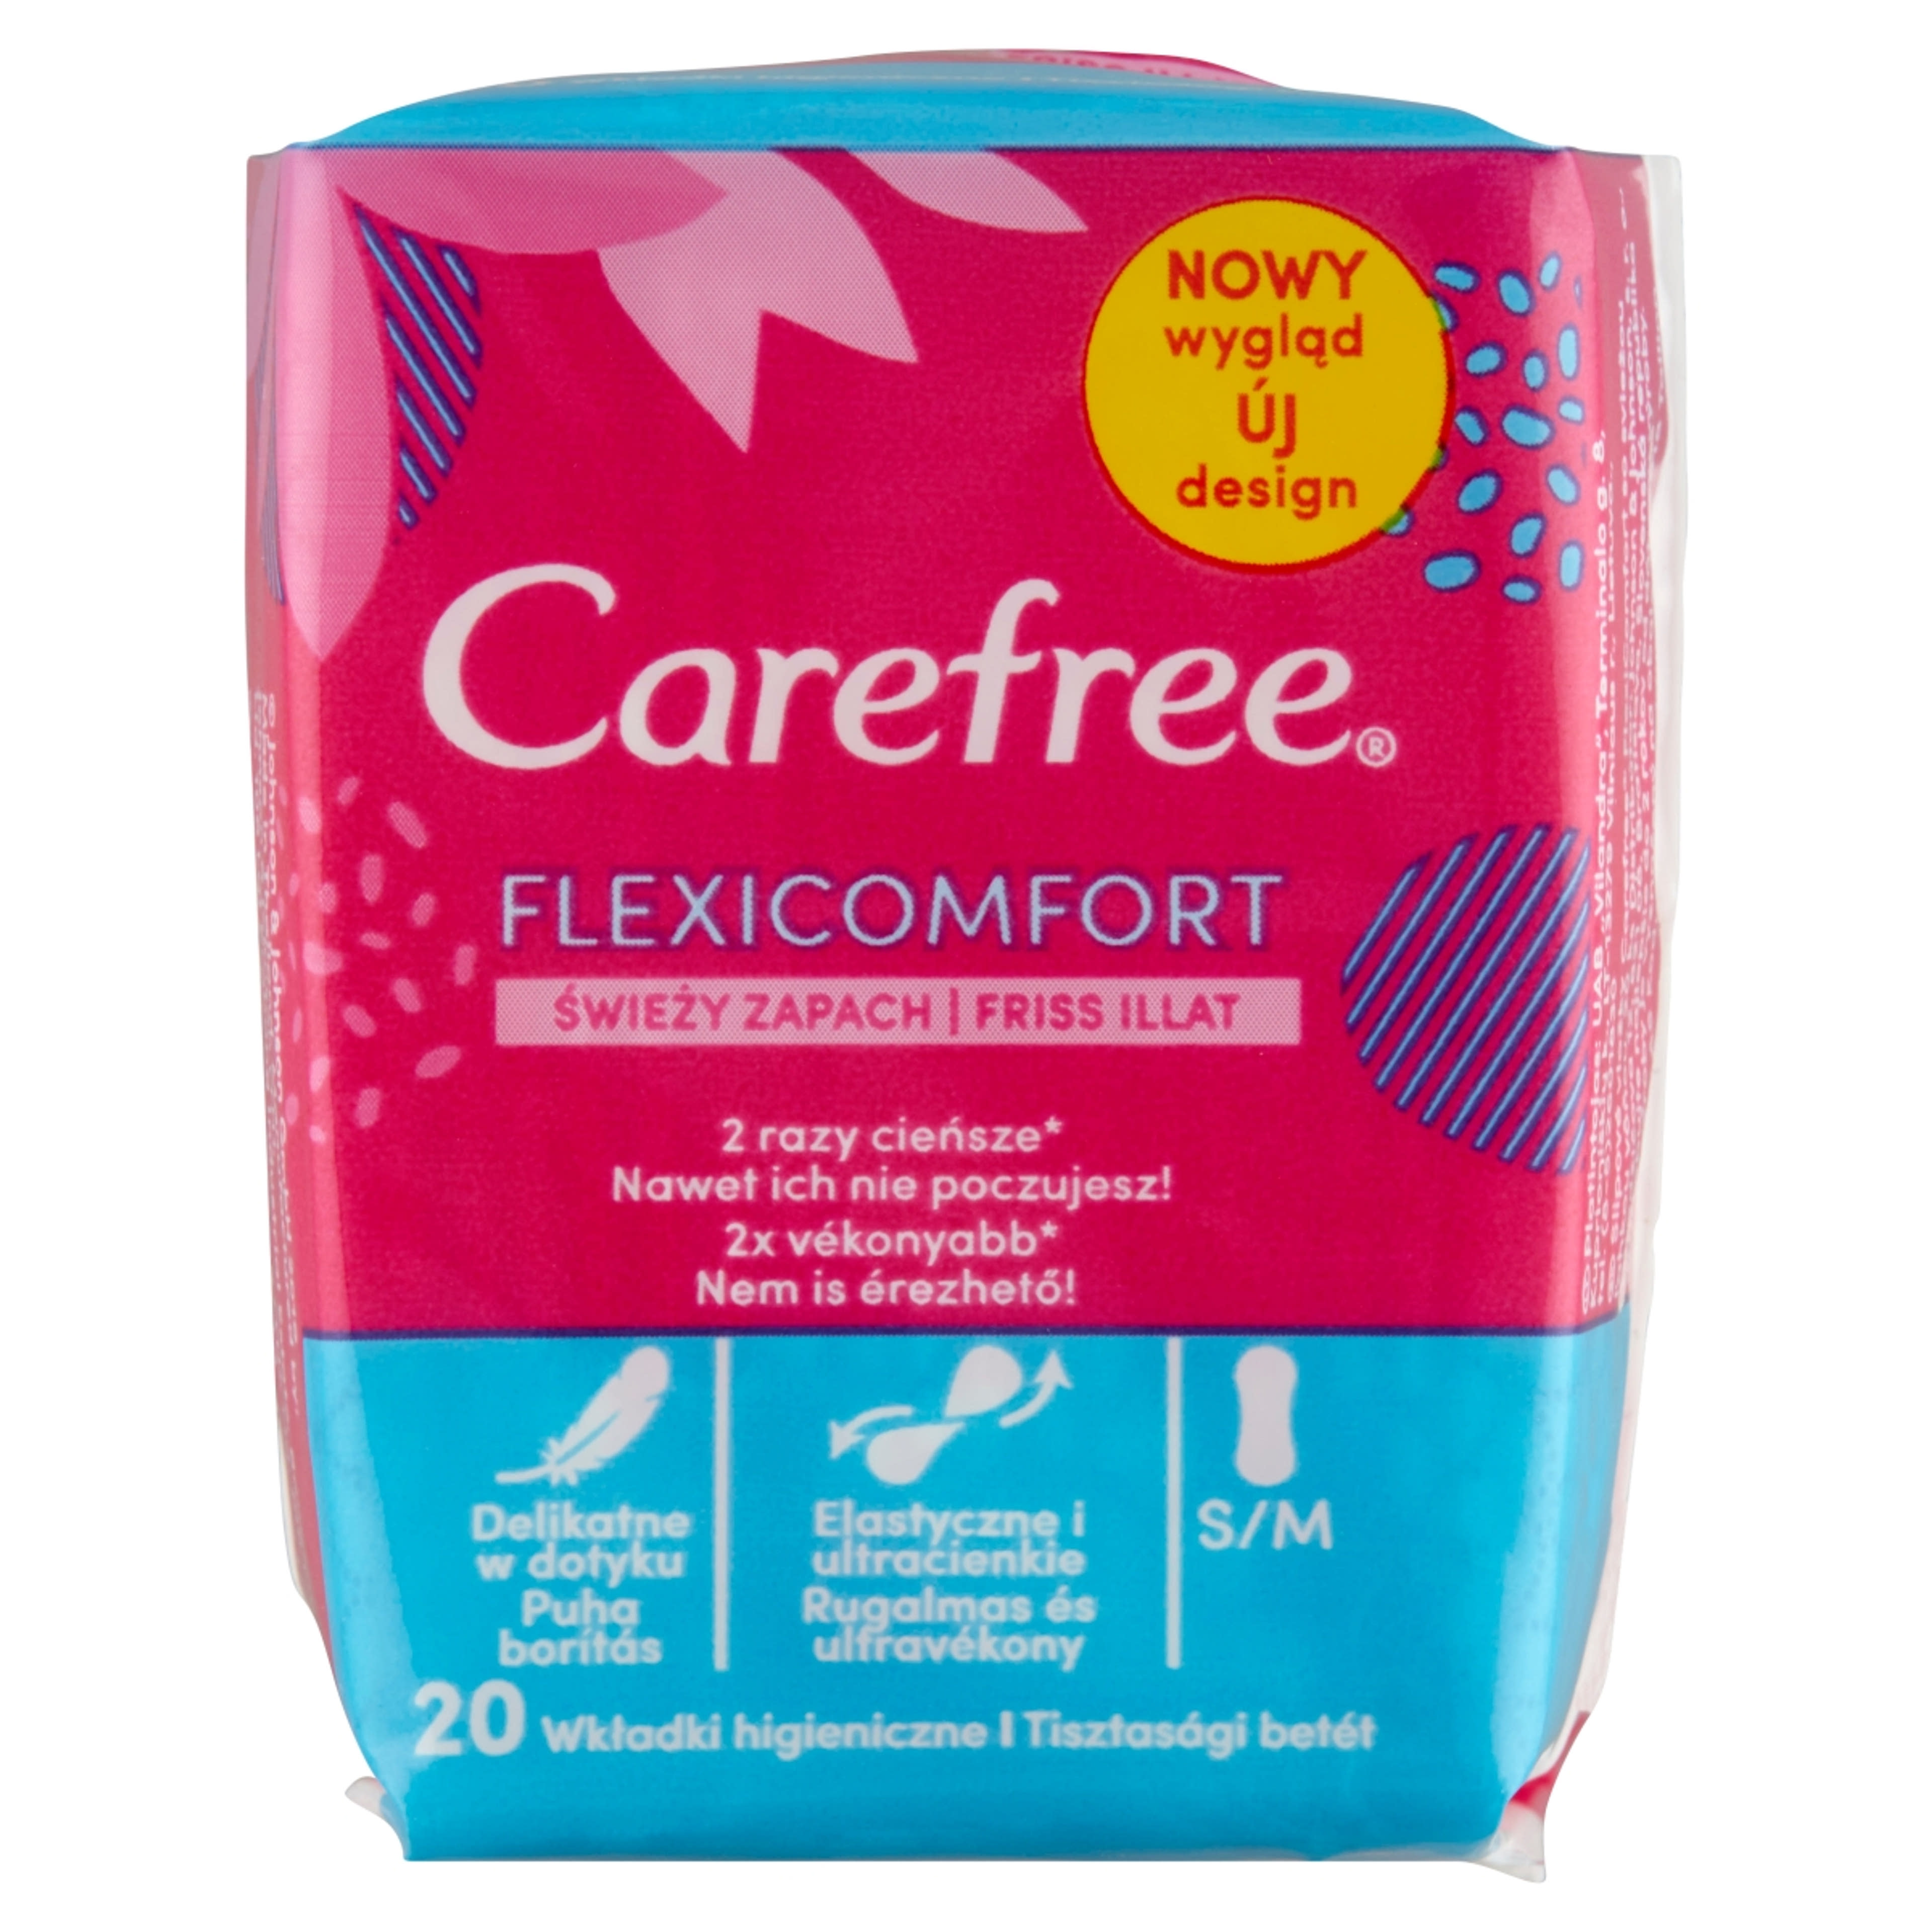 Carefree FlexiComfort tisztasági betét friss illattal - 20 db-1